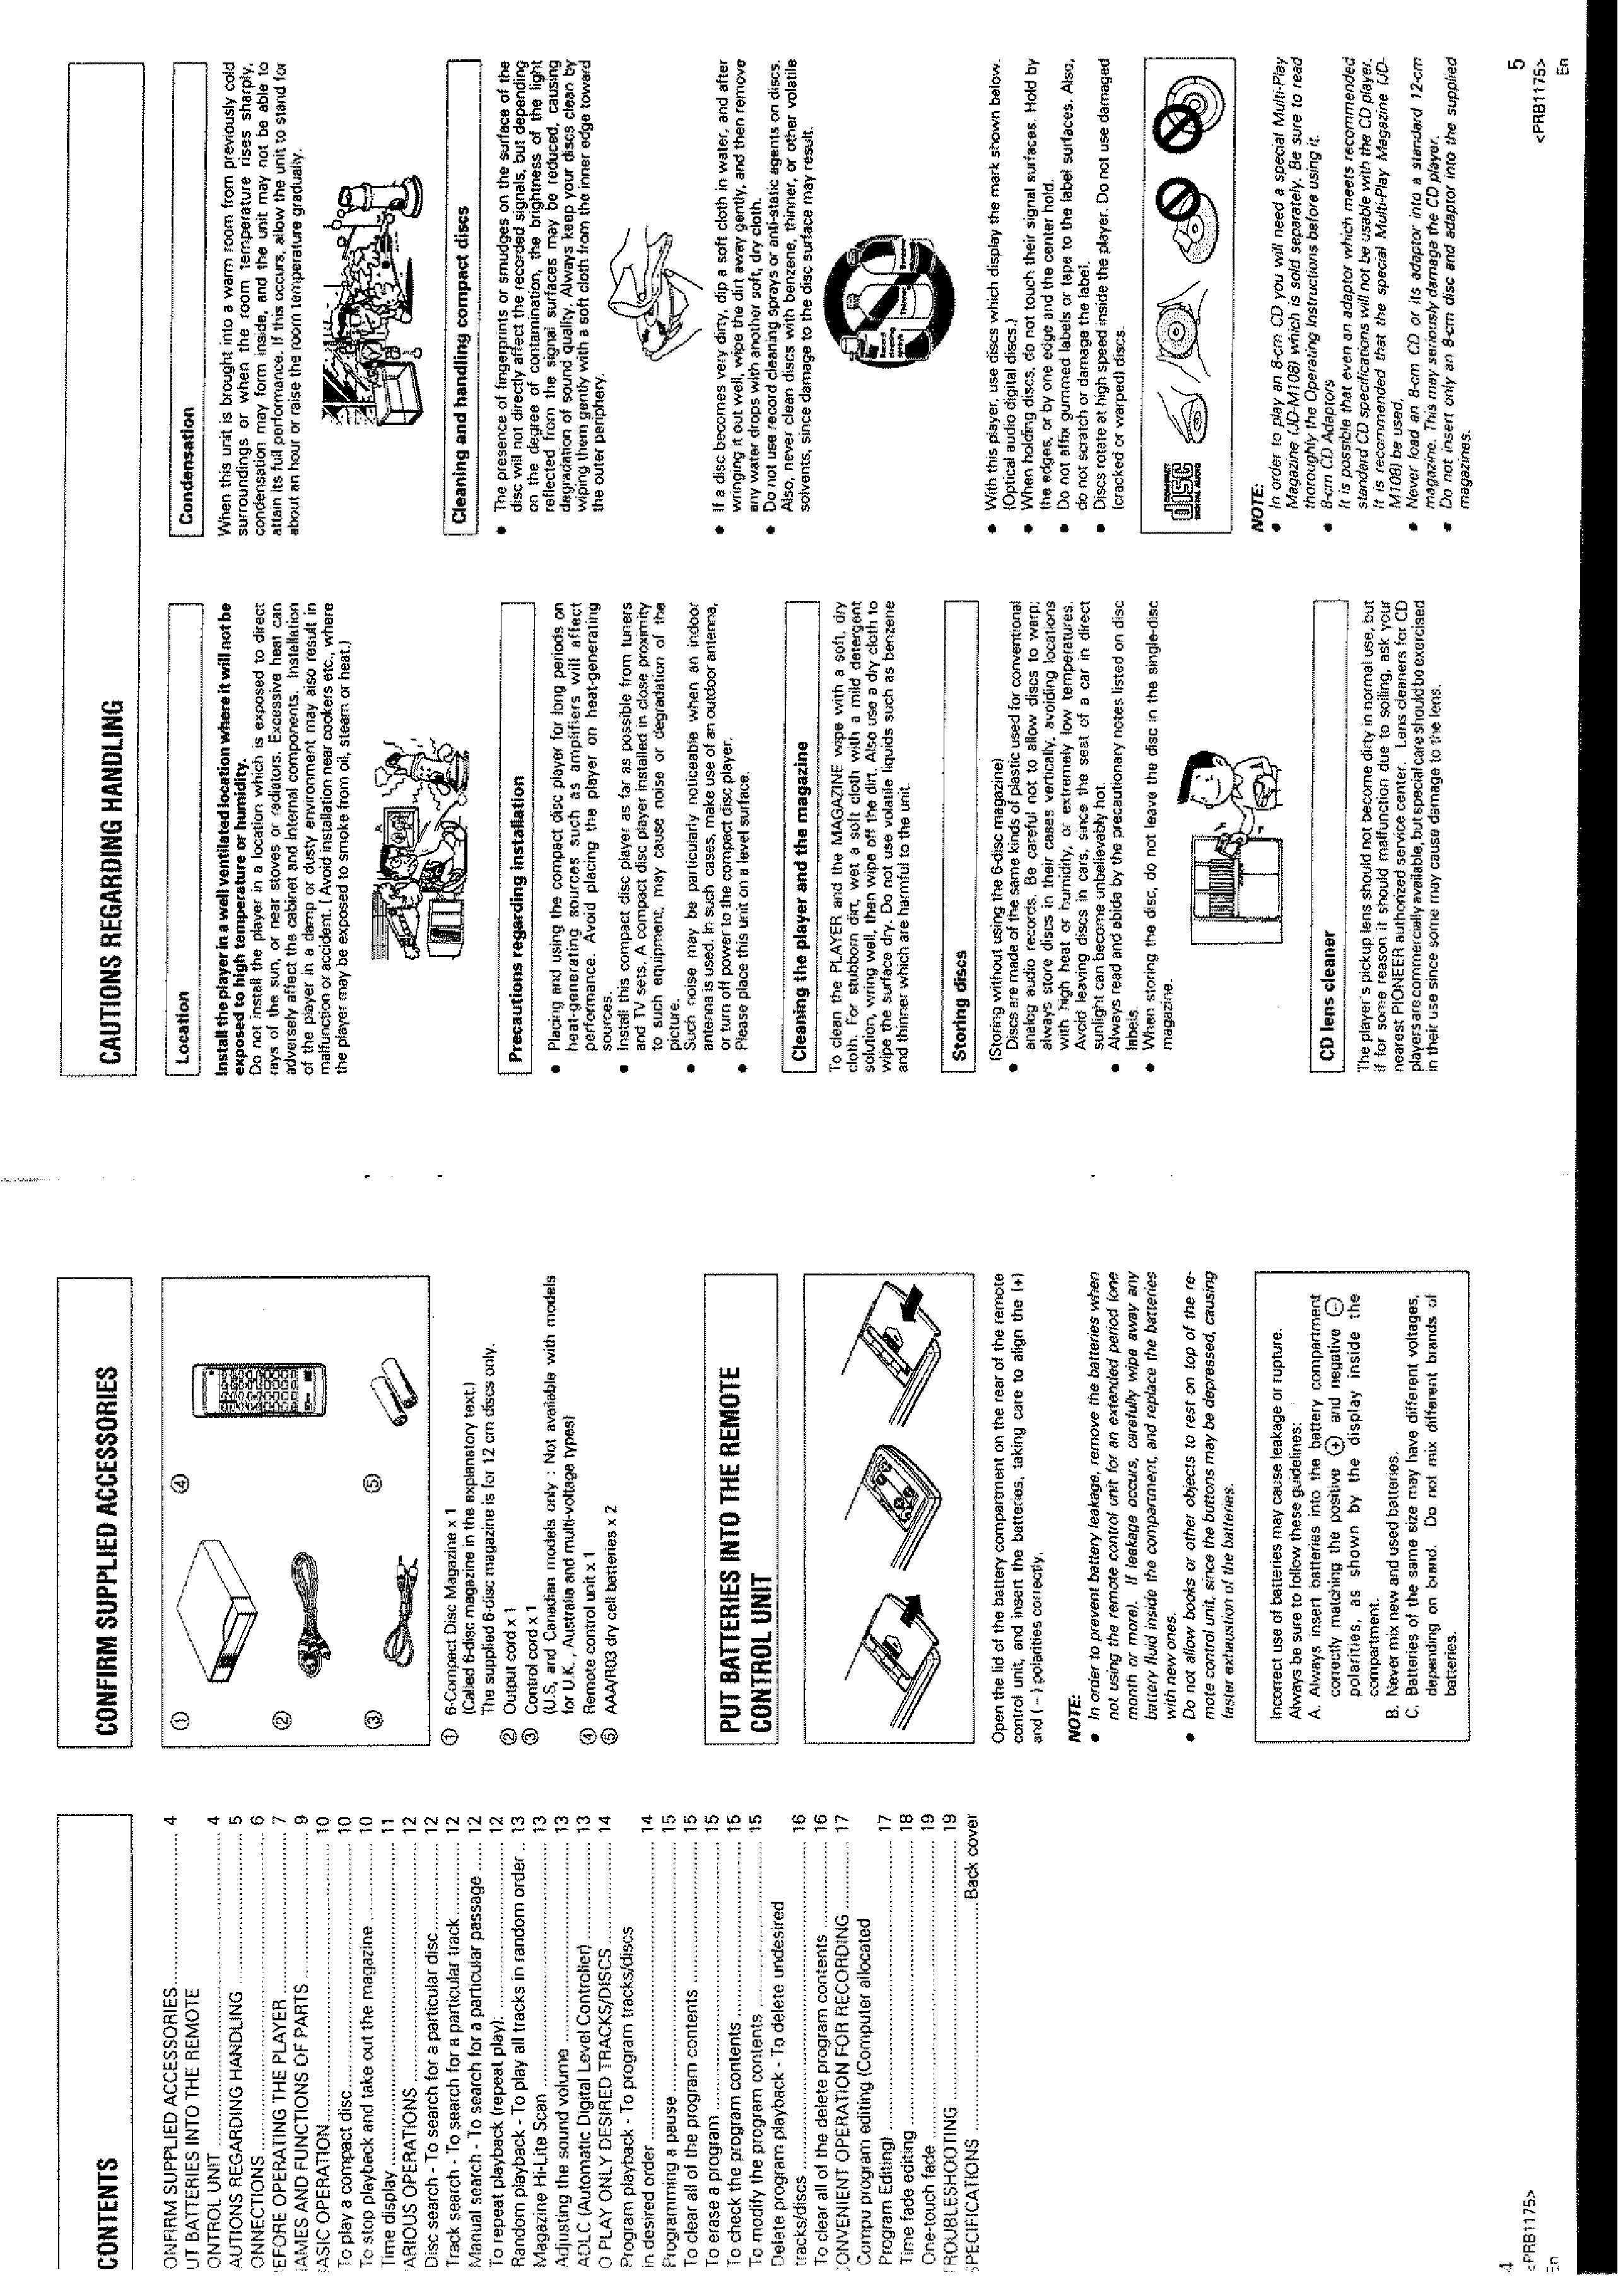 PIONEER PDM701 - Owner's Manual Immediate Download